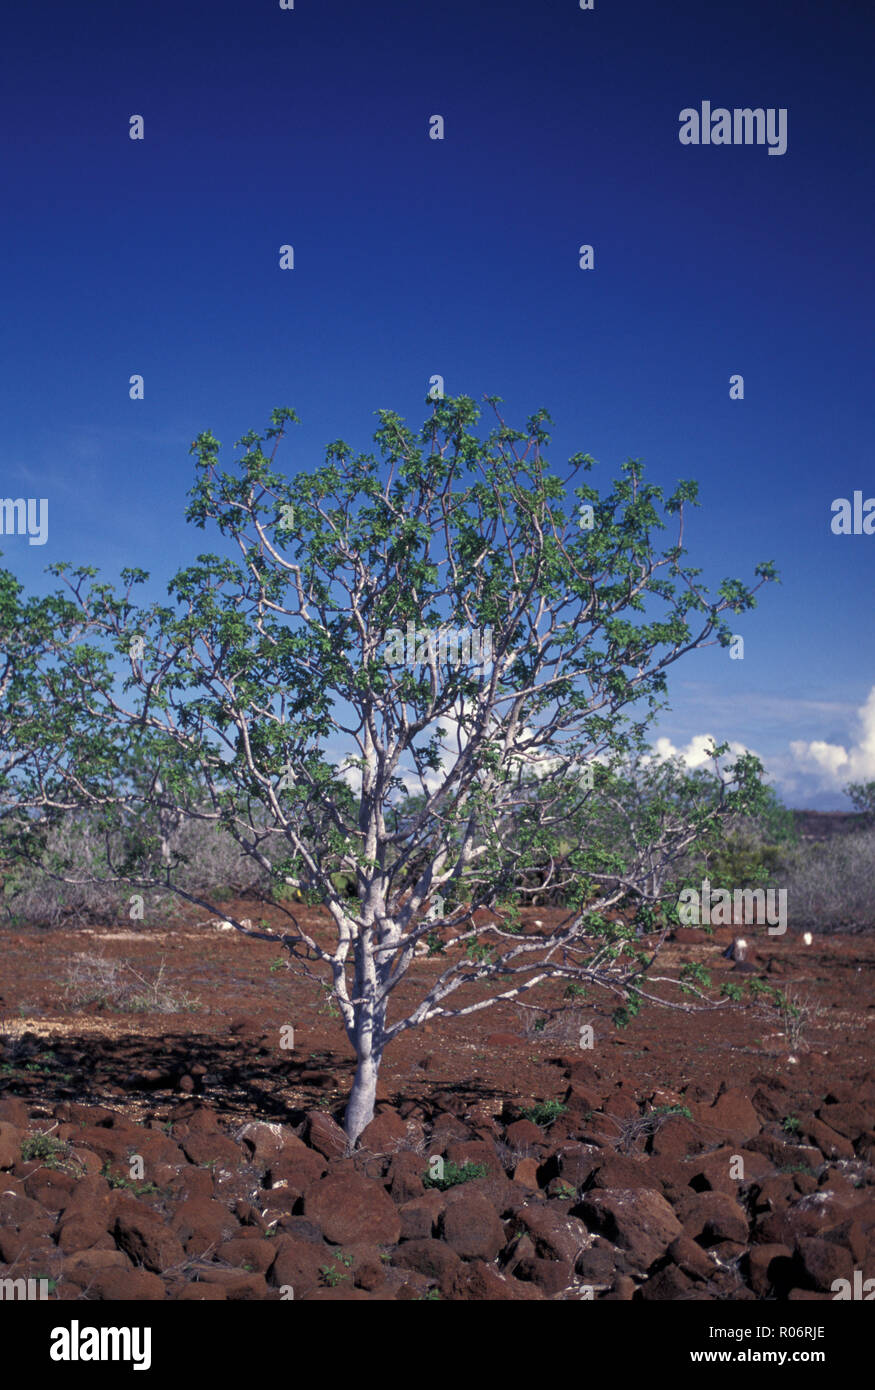 No 1094344 Ecuador Galapagos Isla Seymour Norte solitario árbol de Palo Santo de stock - Alamy